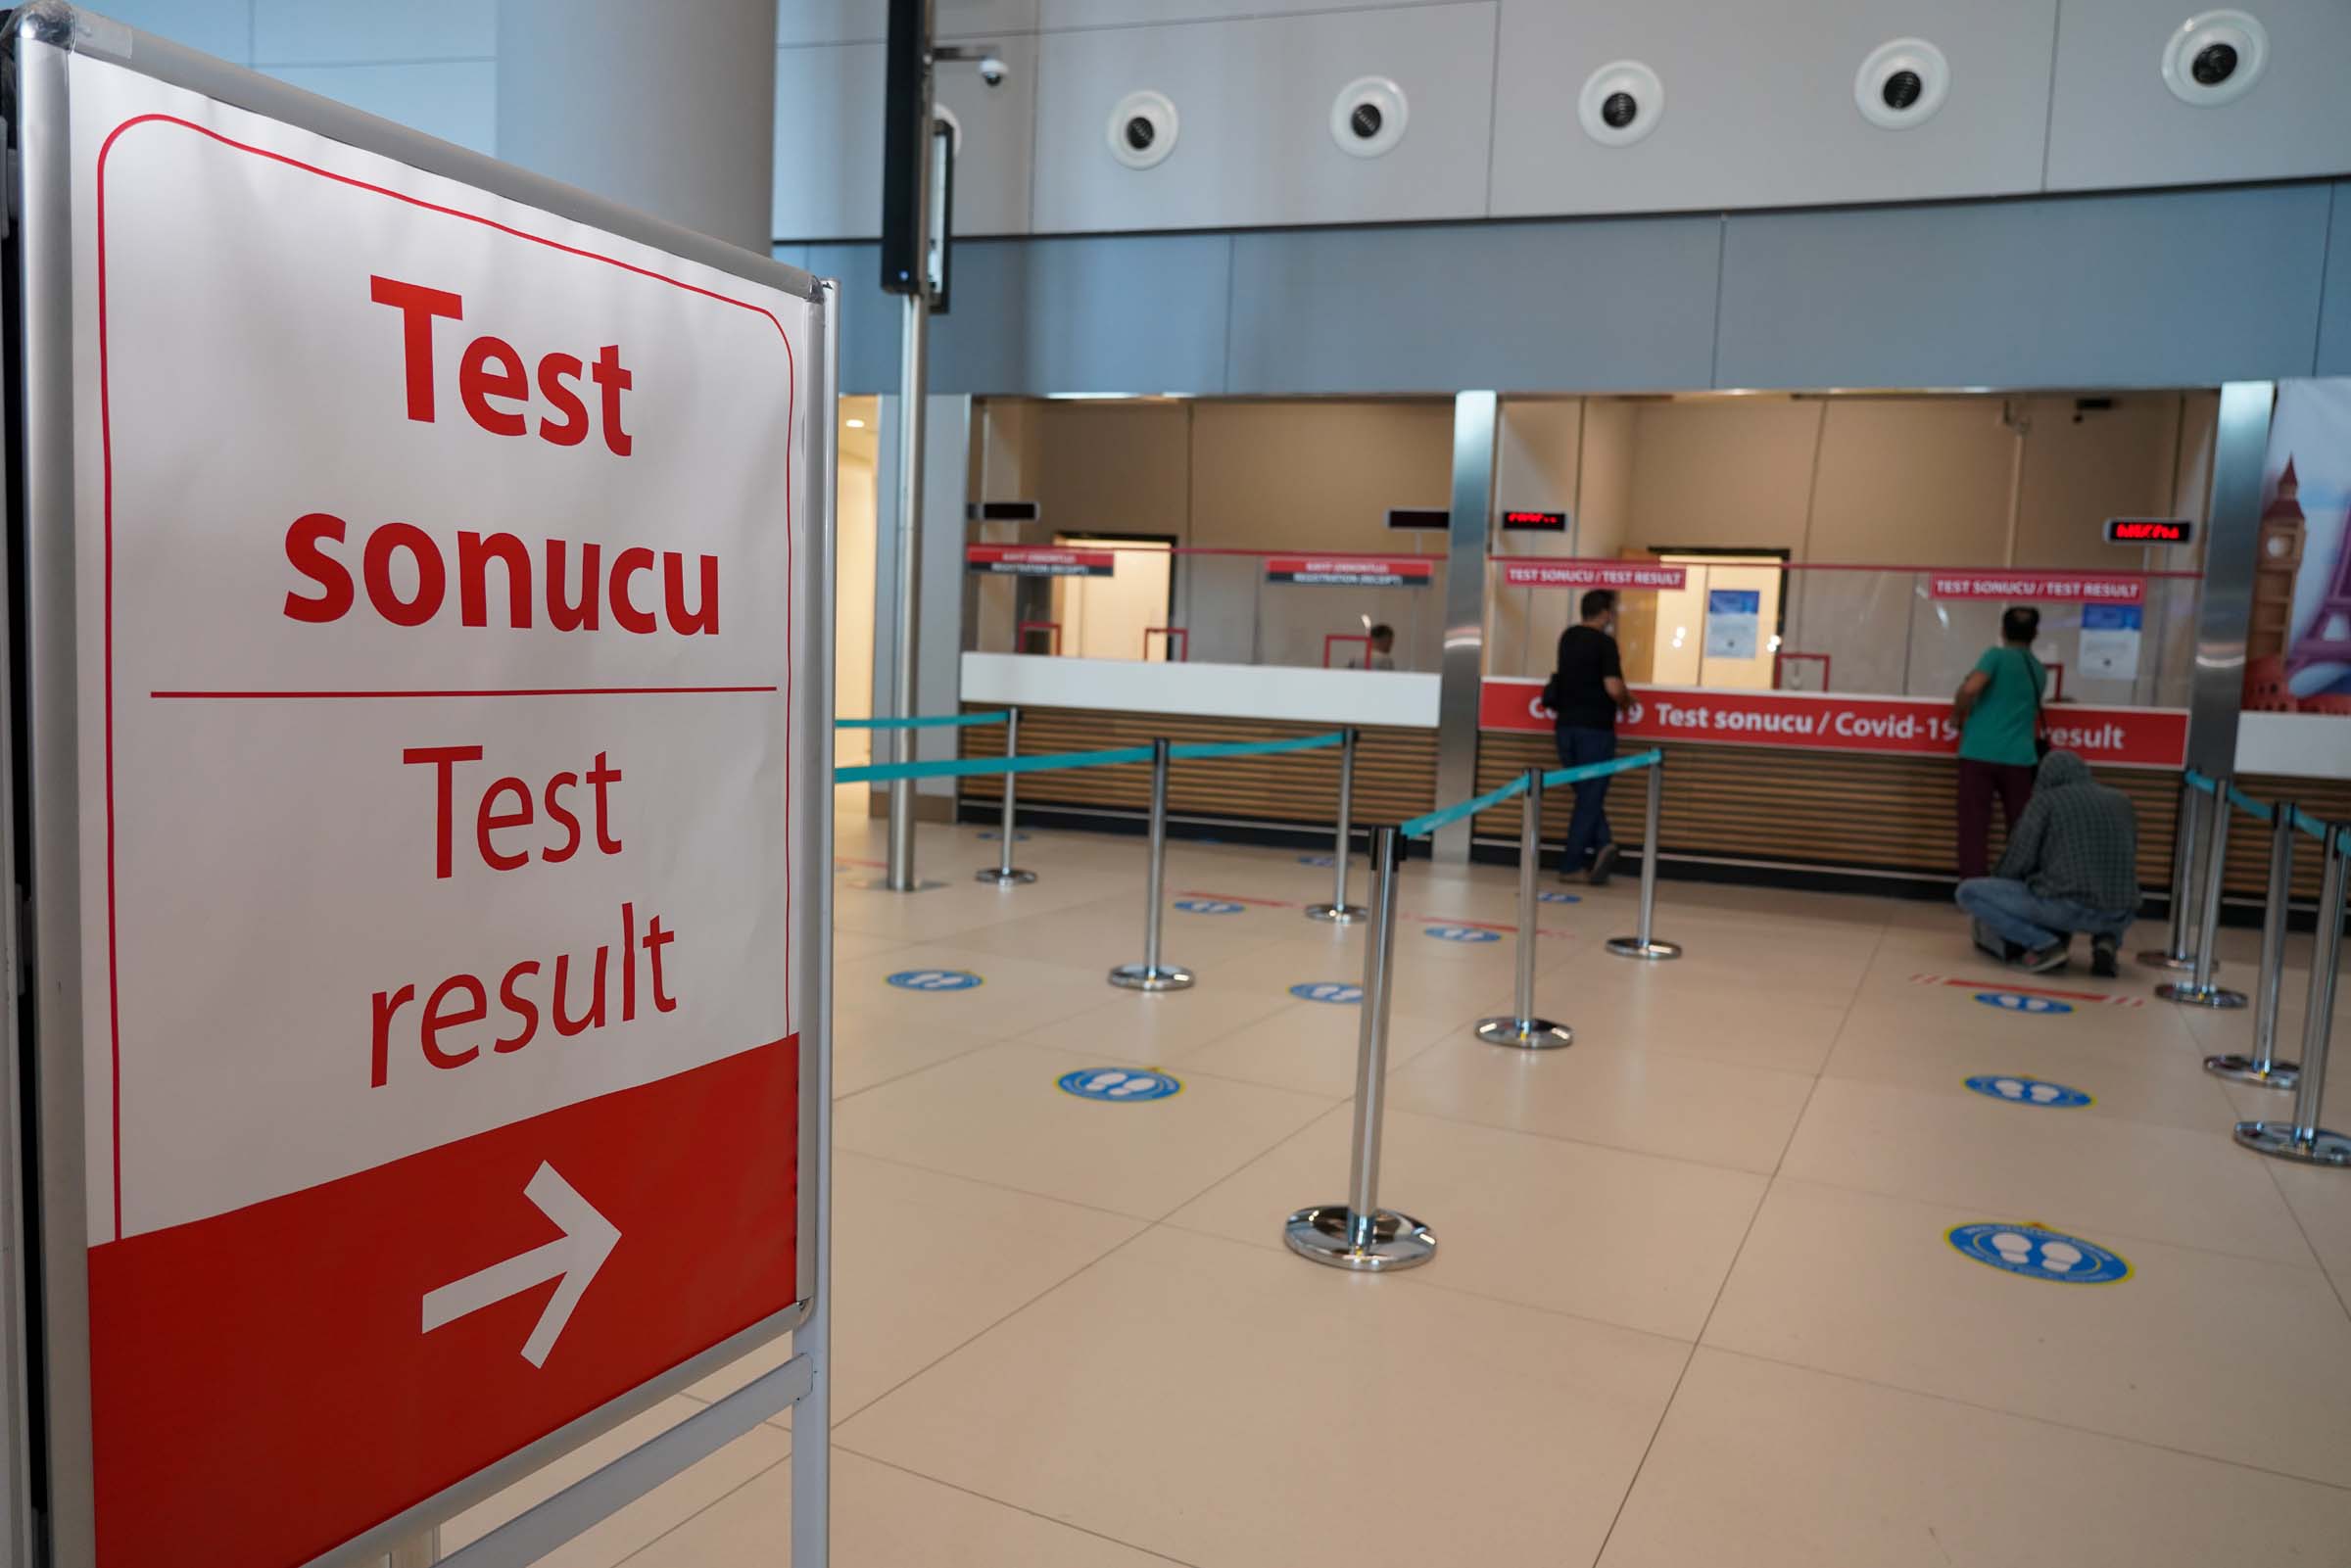 İstanbul Havlimanı'nda 1.5 saatte test sonucu alınabilecek